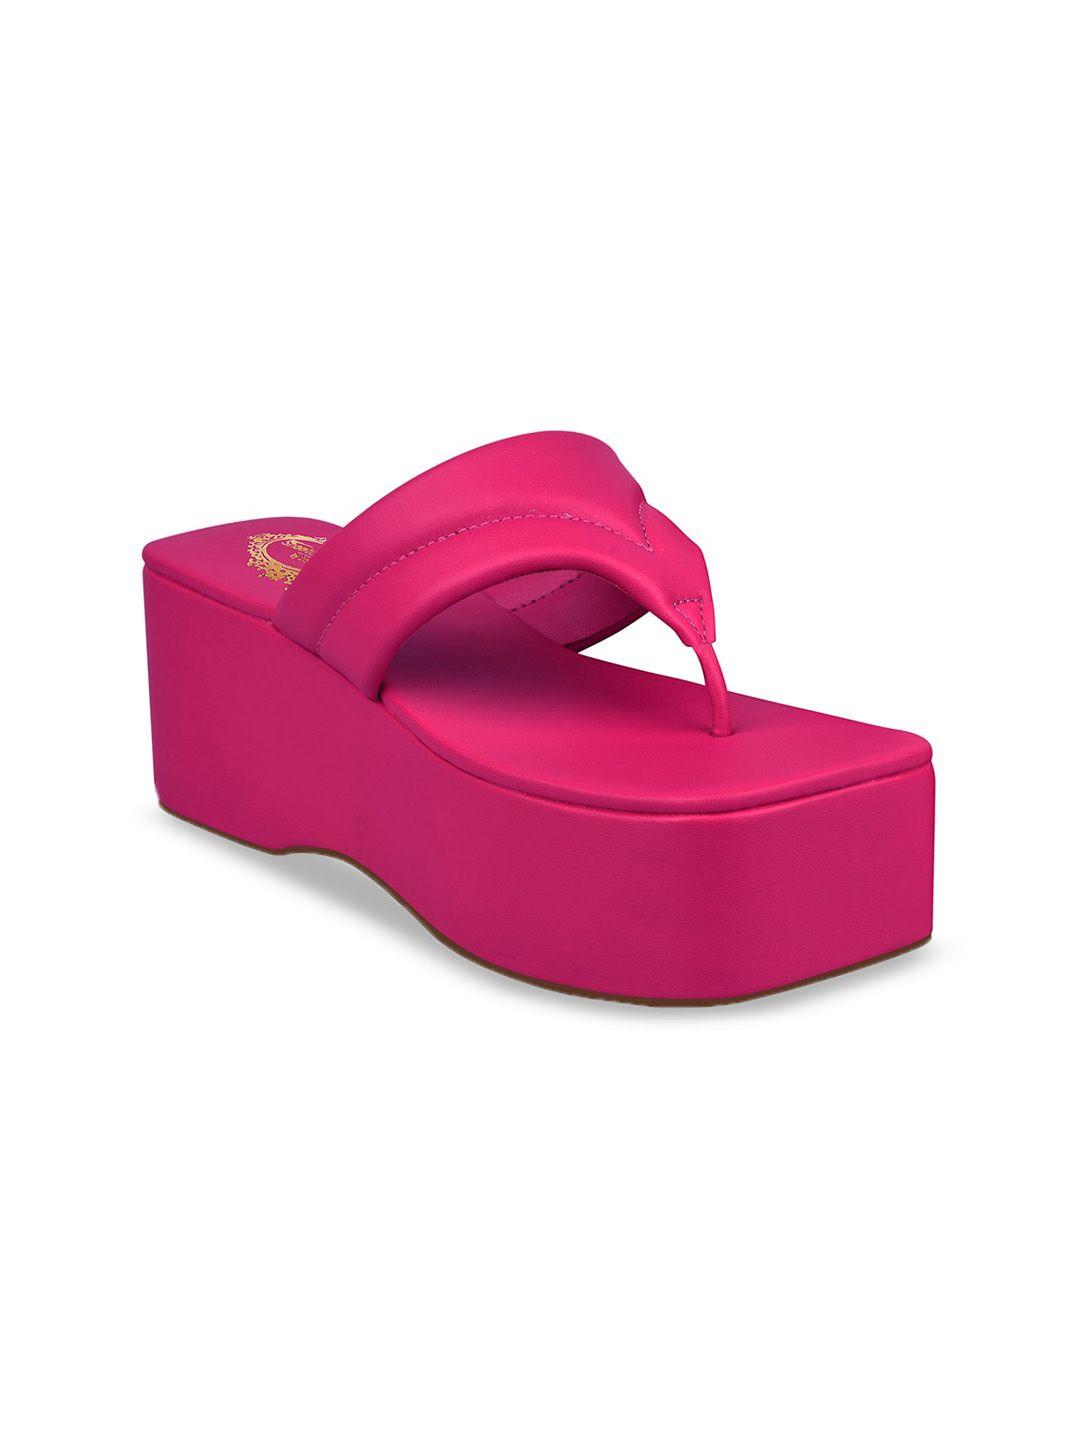 shoetopia girls pink flatform sandals